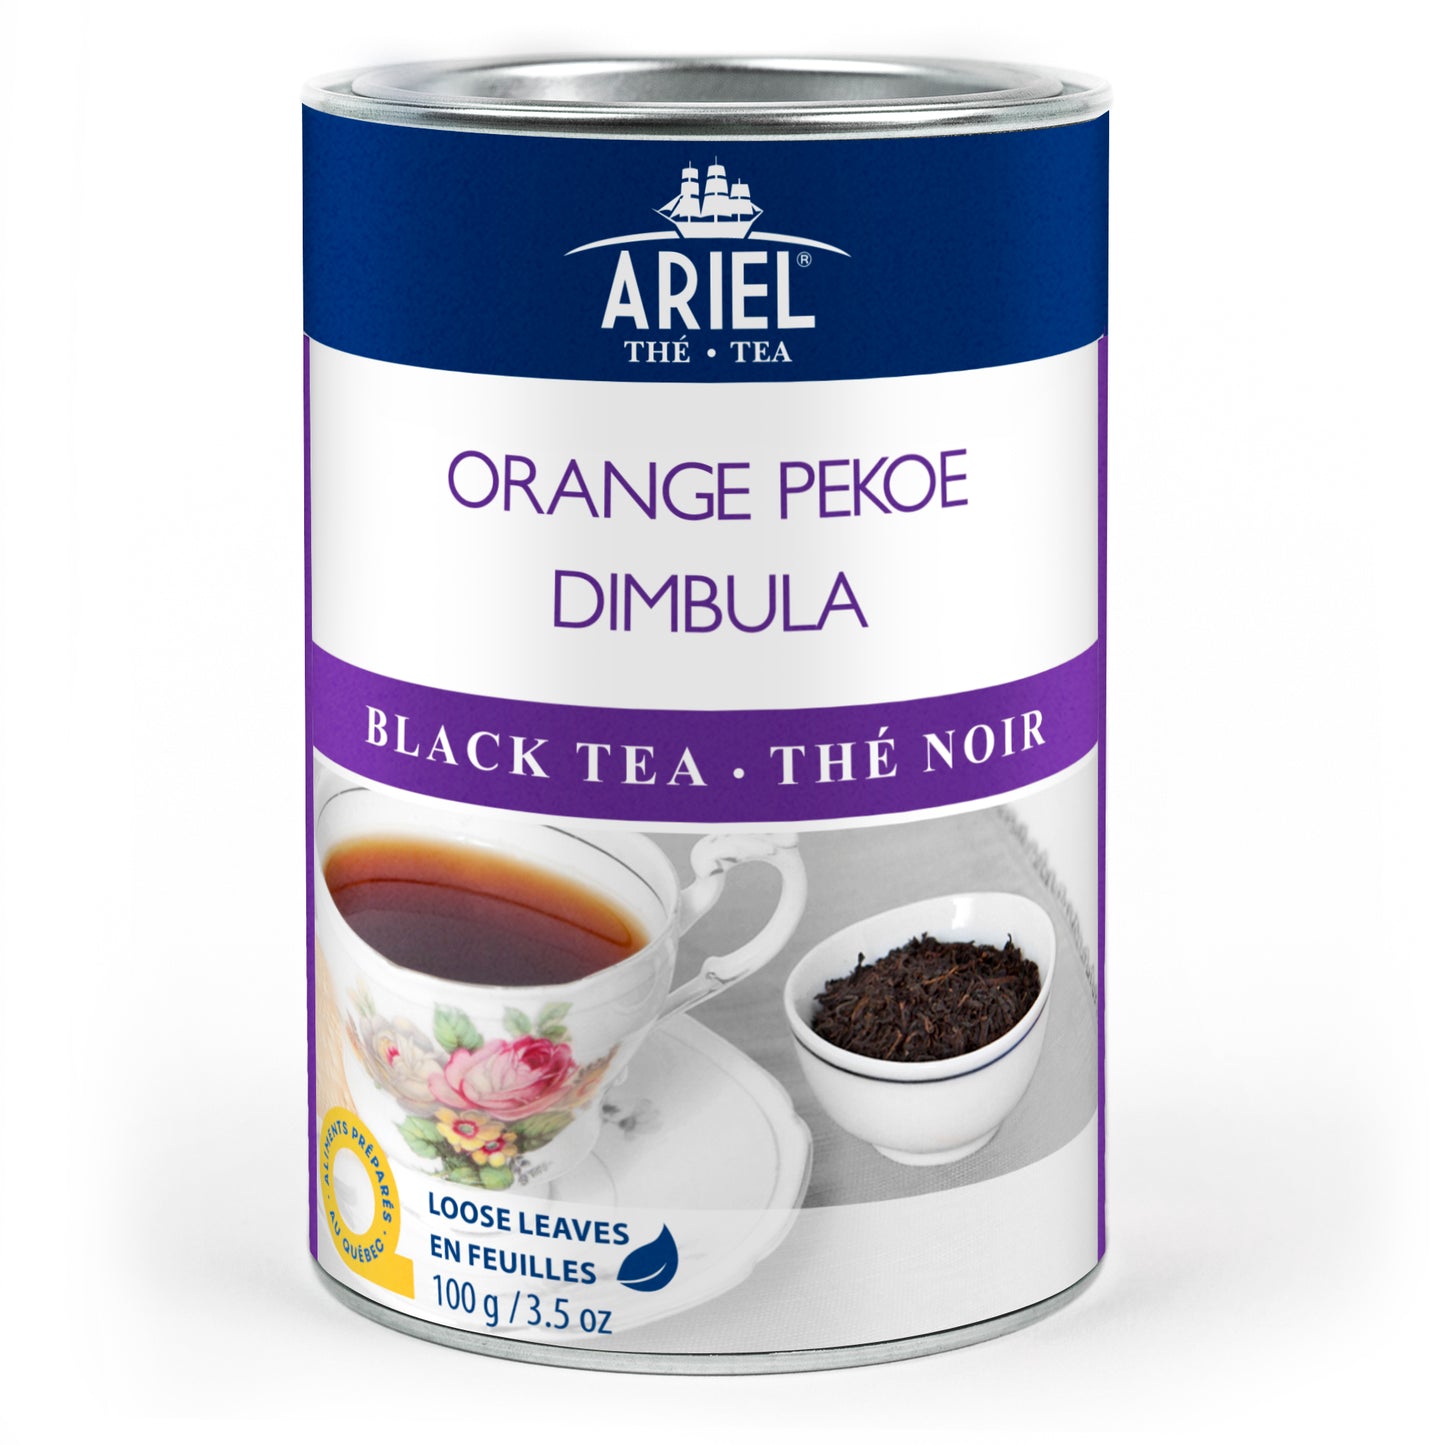 Orange Pekoe Dimbula - Black Tea